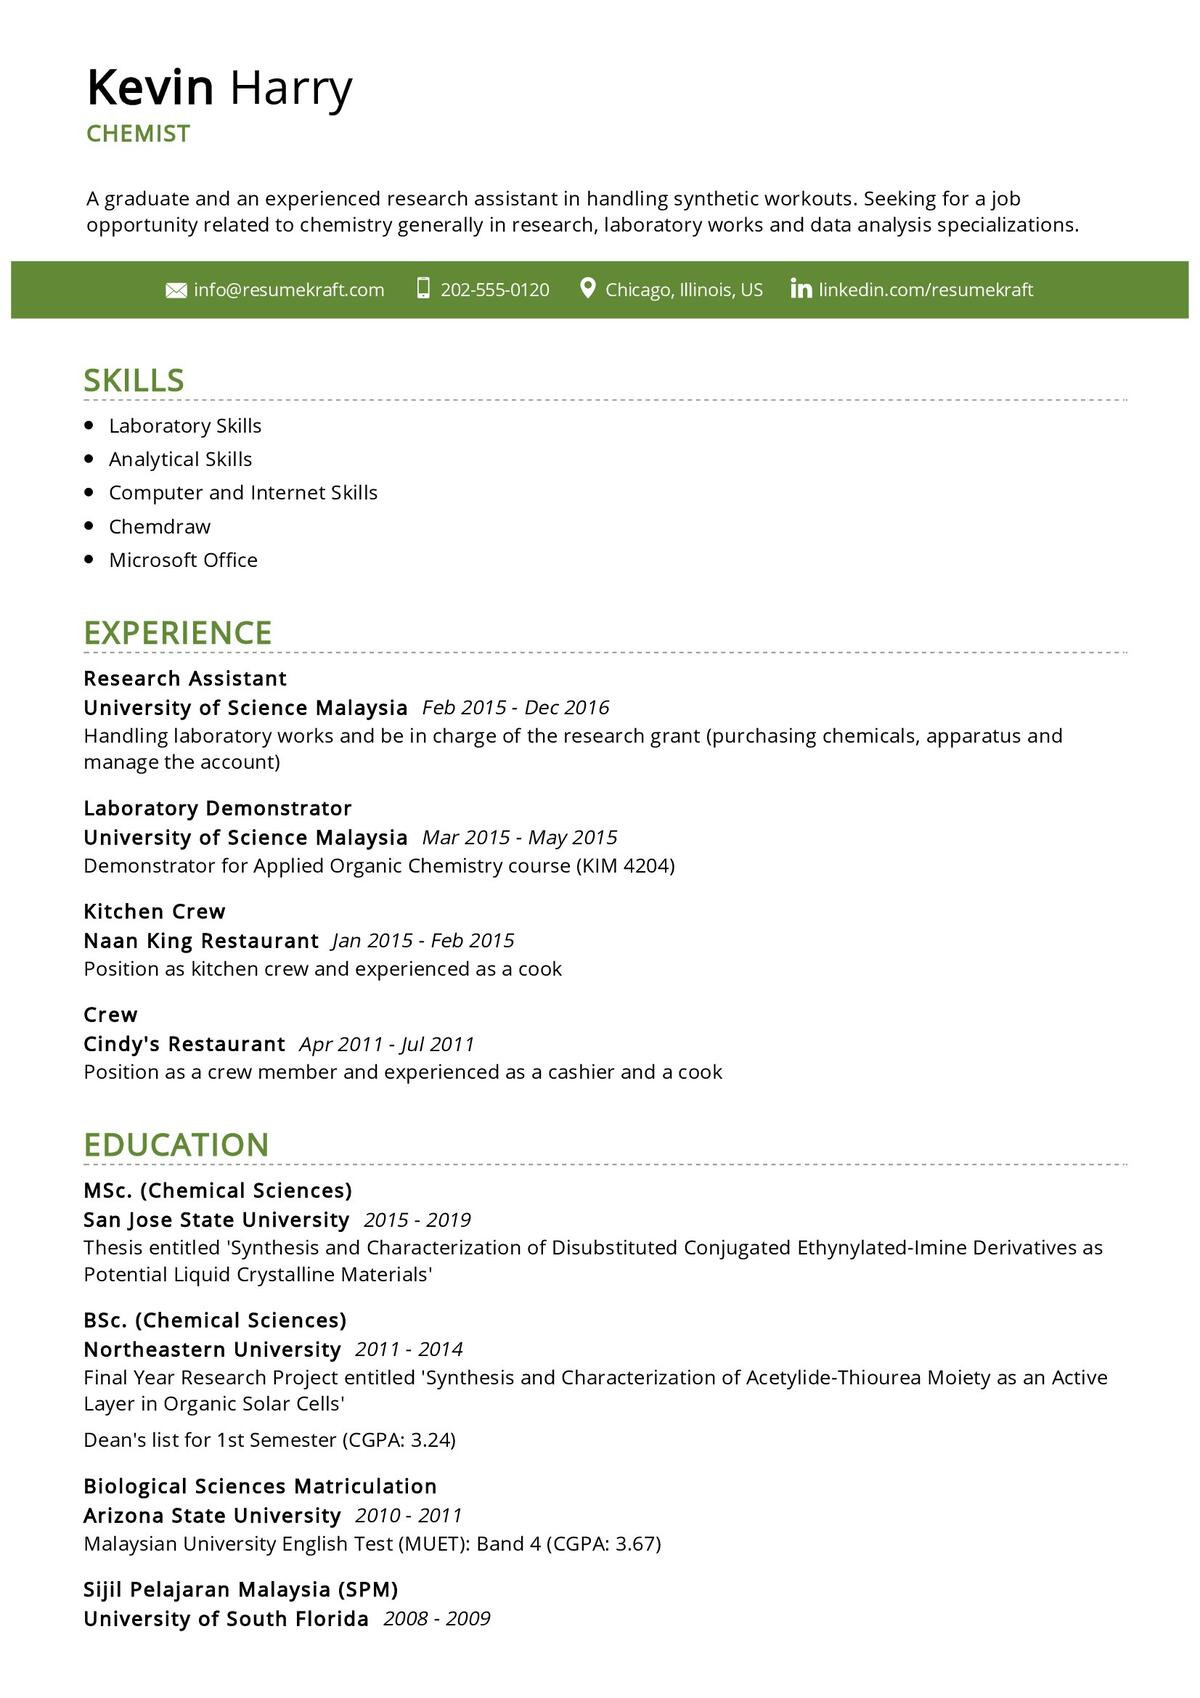 Sample Resume for Msc Chemistry Experience Chemist Resume Example 2021 Writing Guide & Tips – Resumekraft